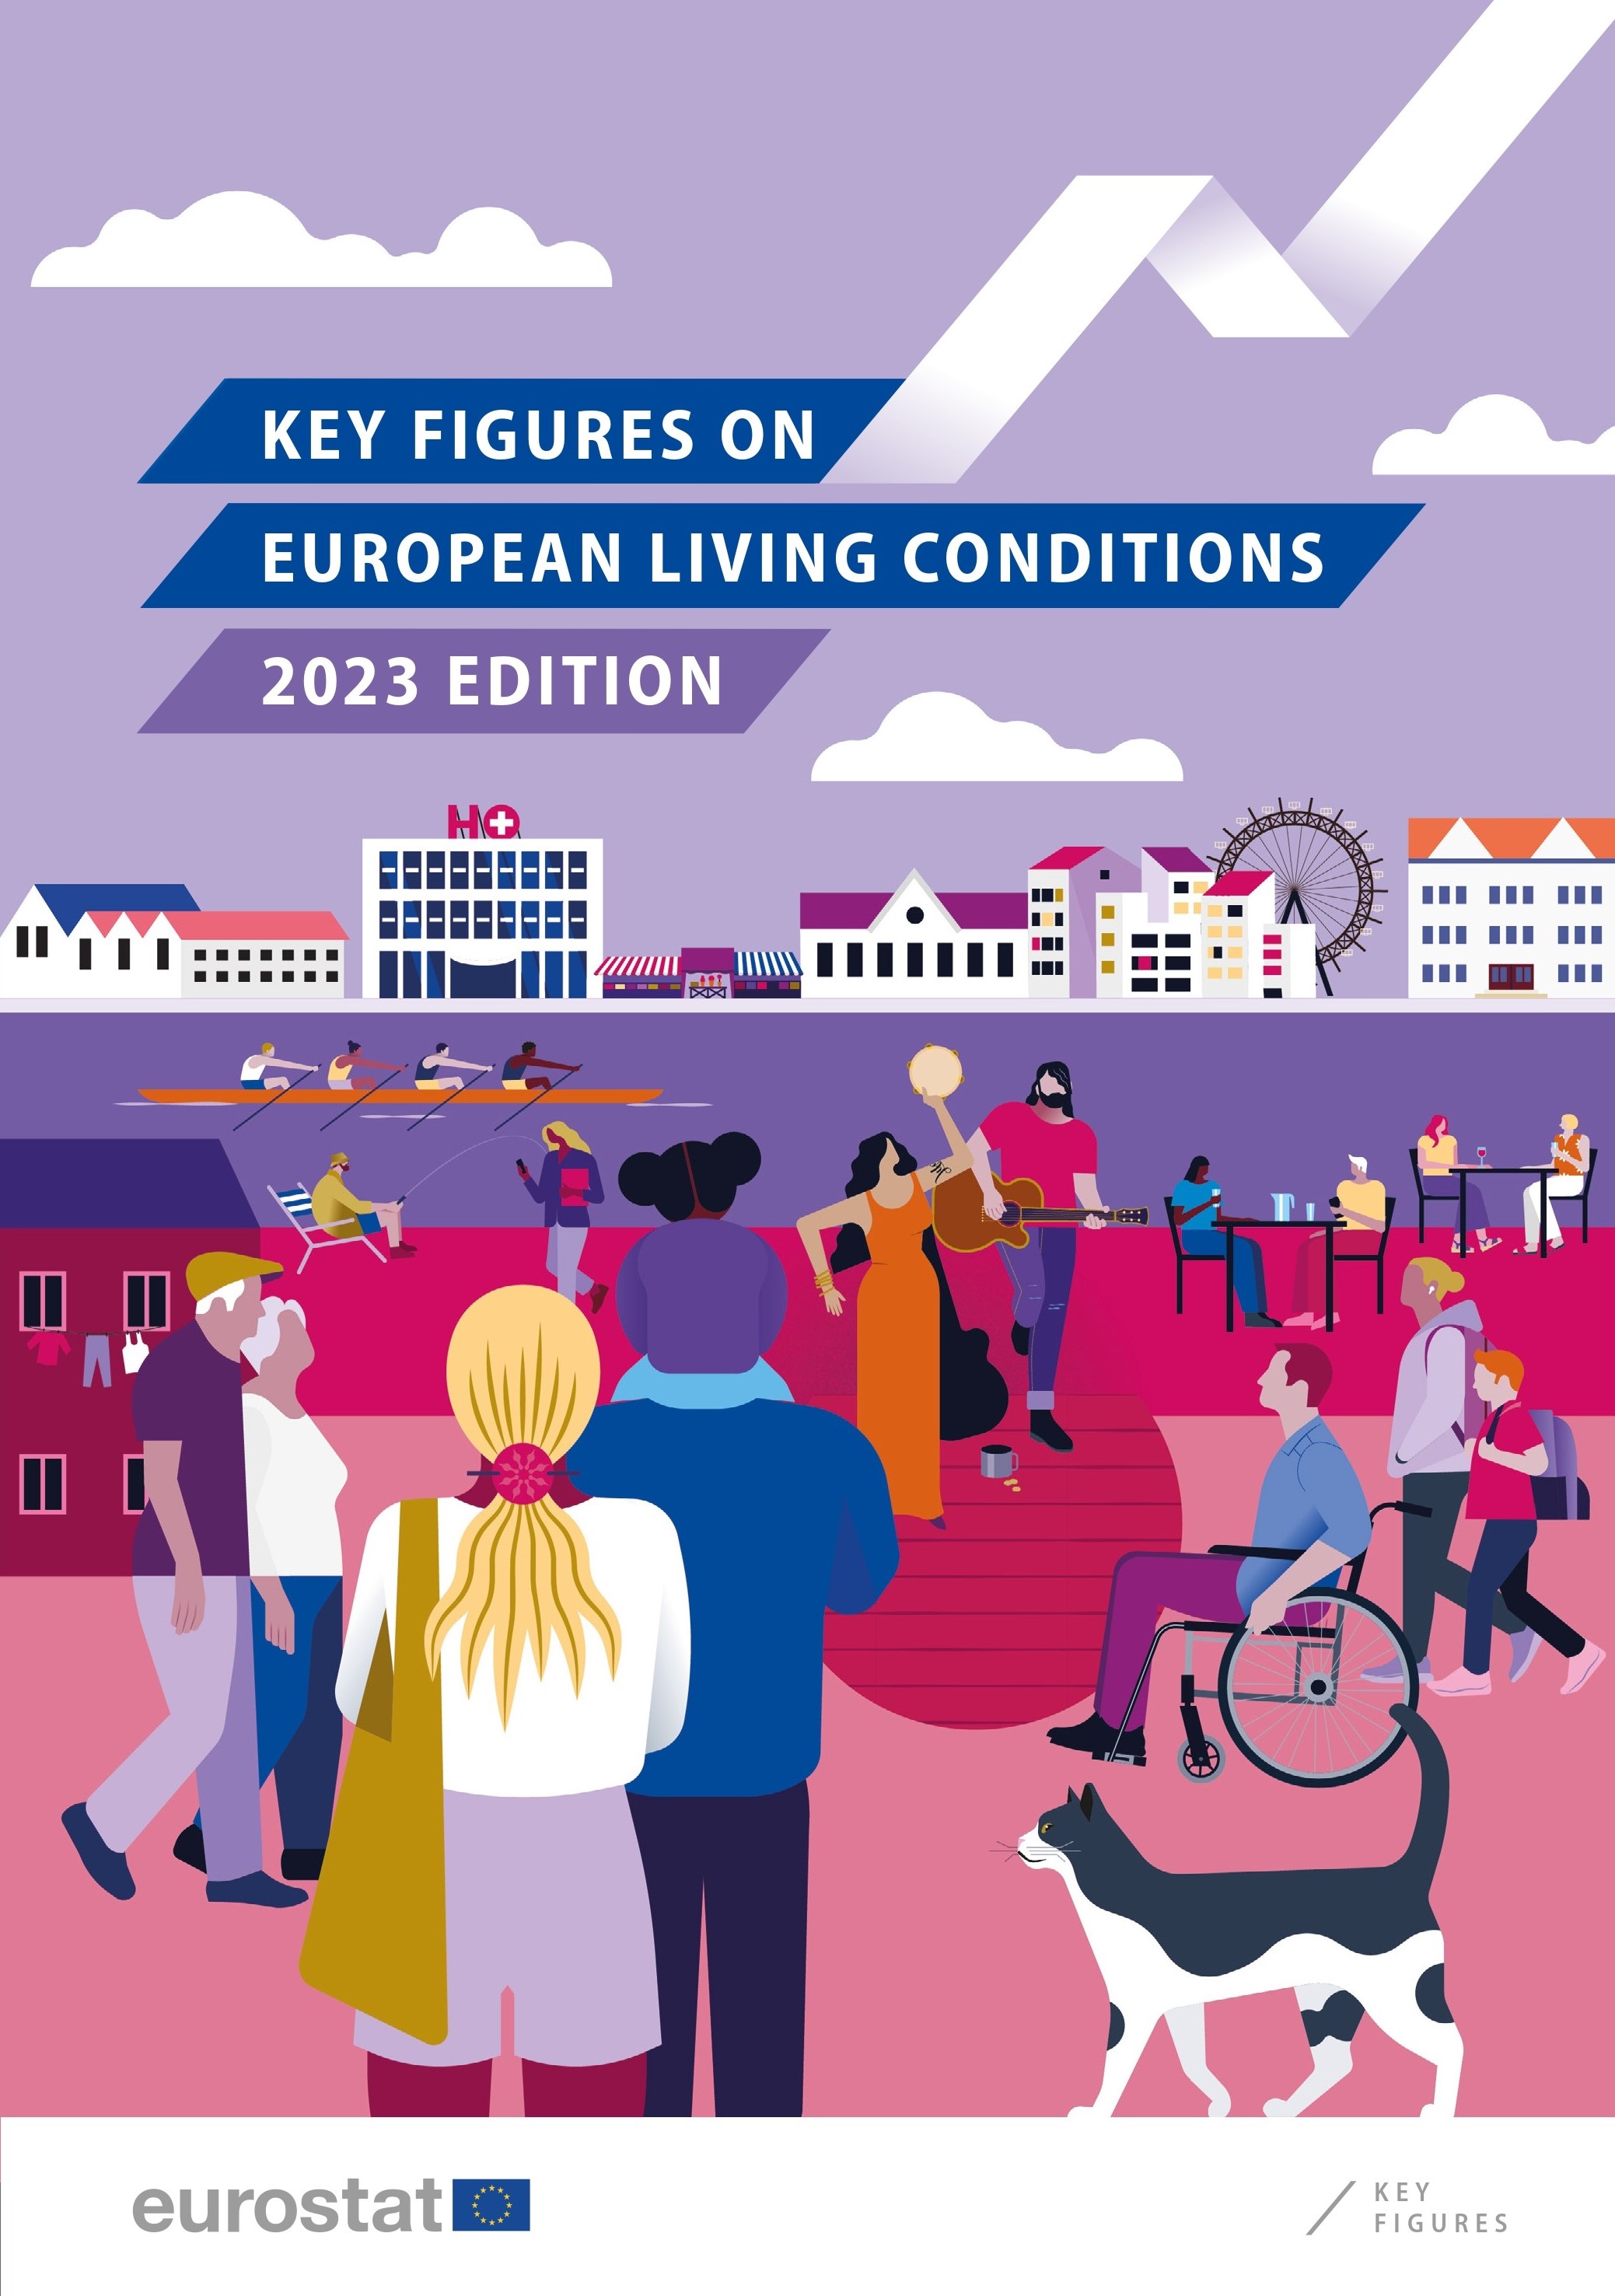 Avrupa'daki yaşam koşullarına ilişkin önemli rakamlar - 2023 baskısı